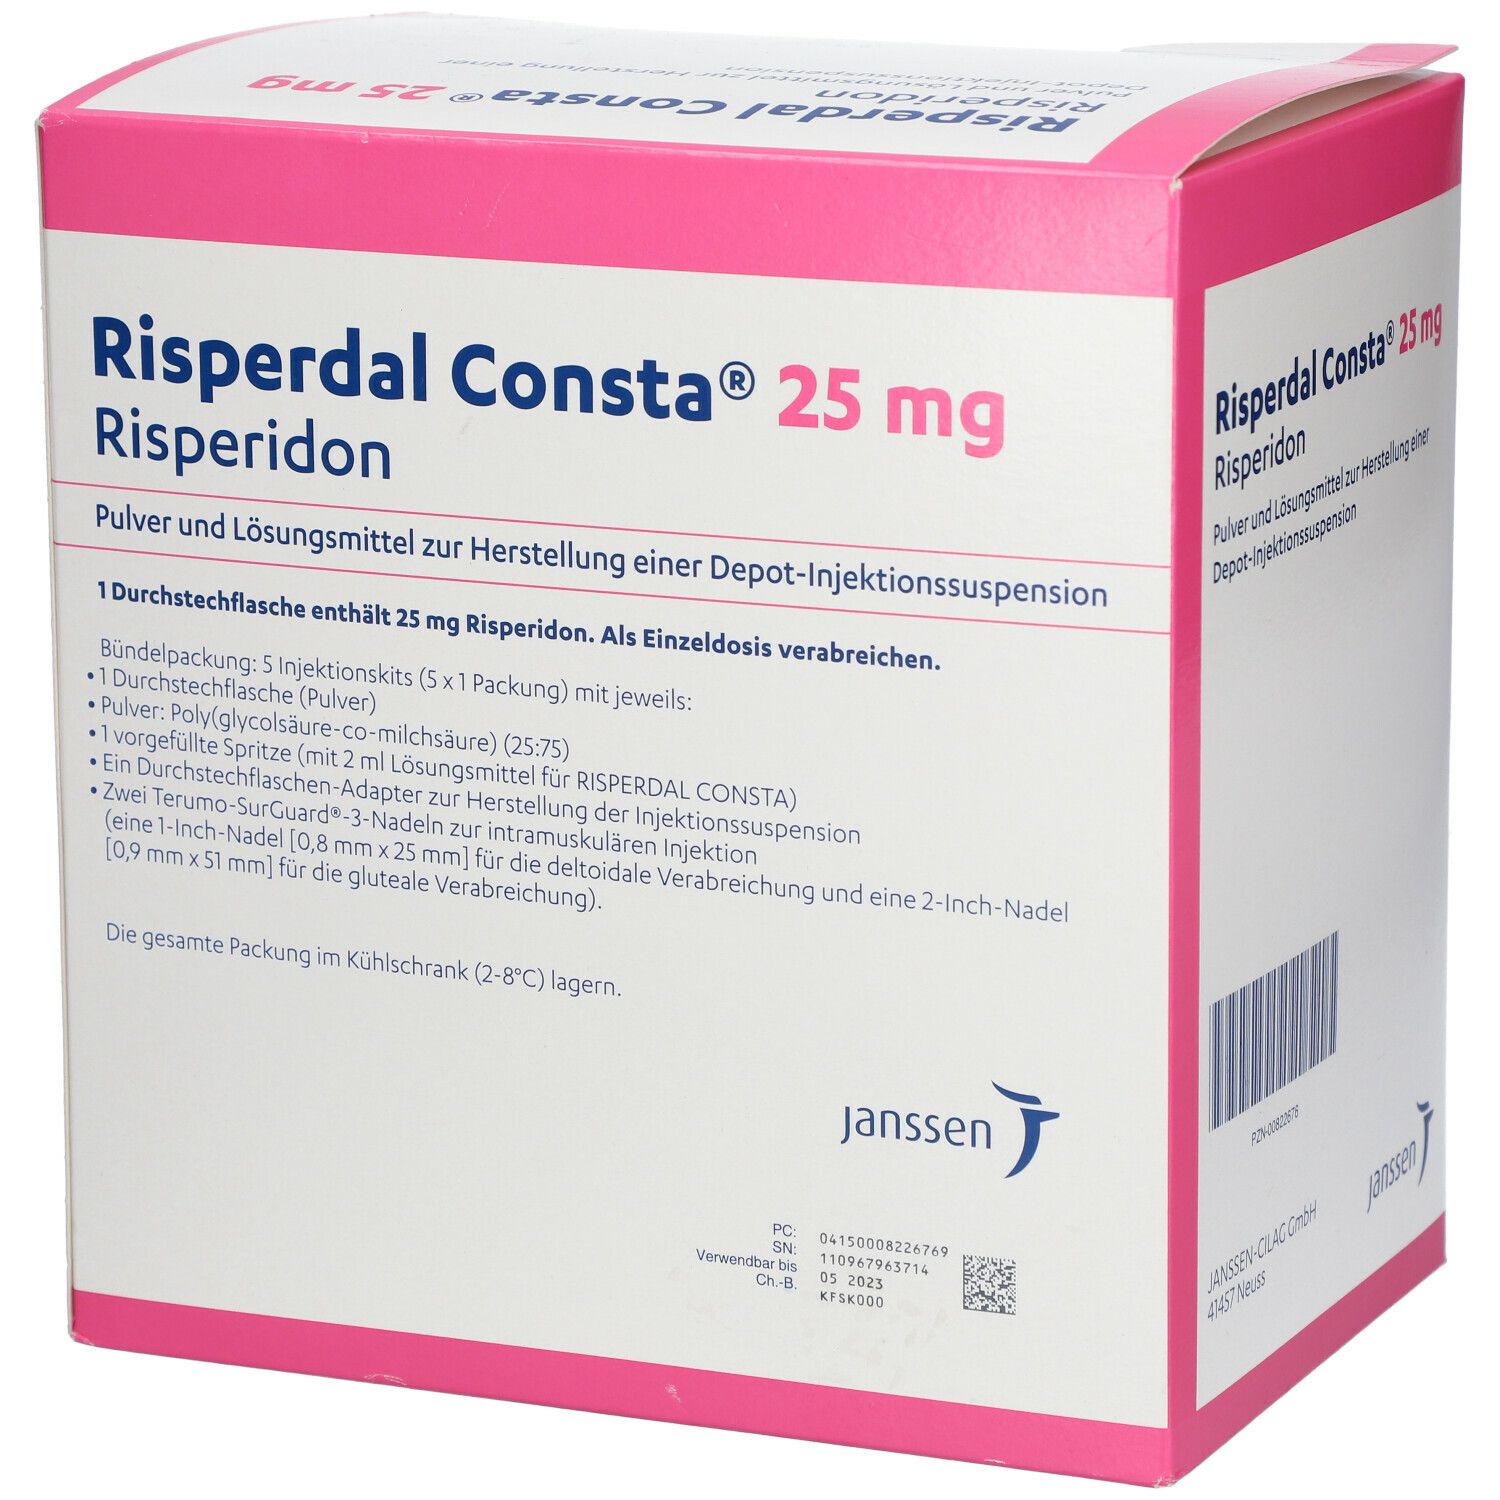 Risperdal Consta® 25 mg